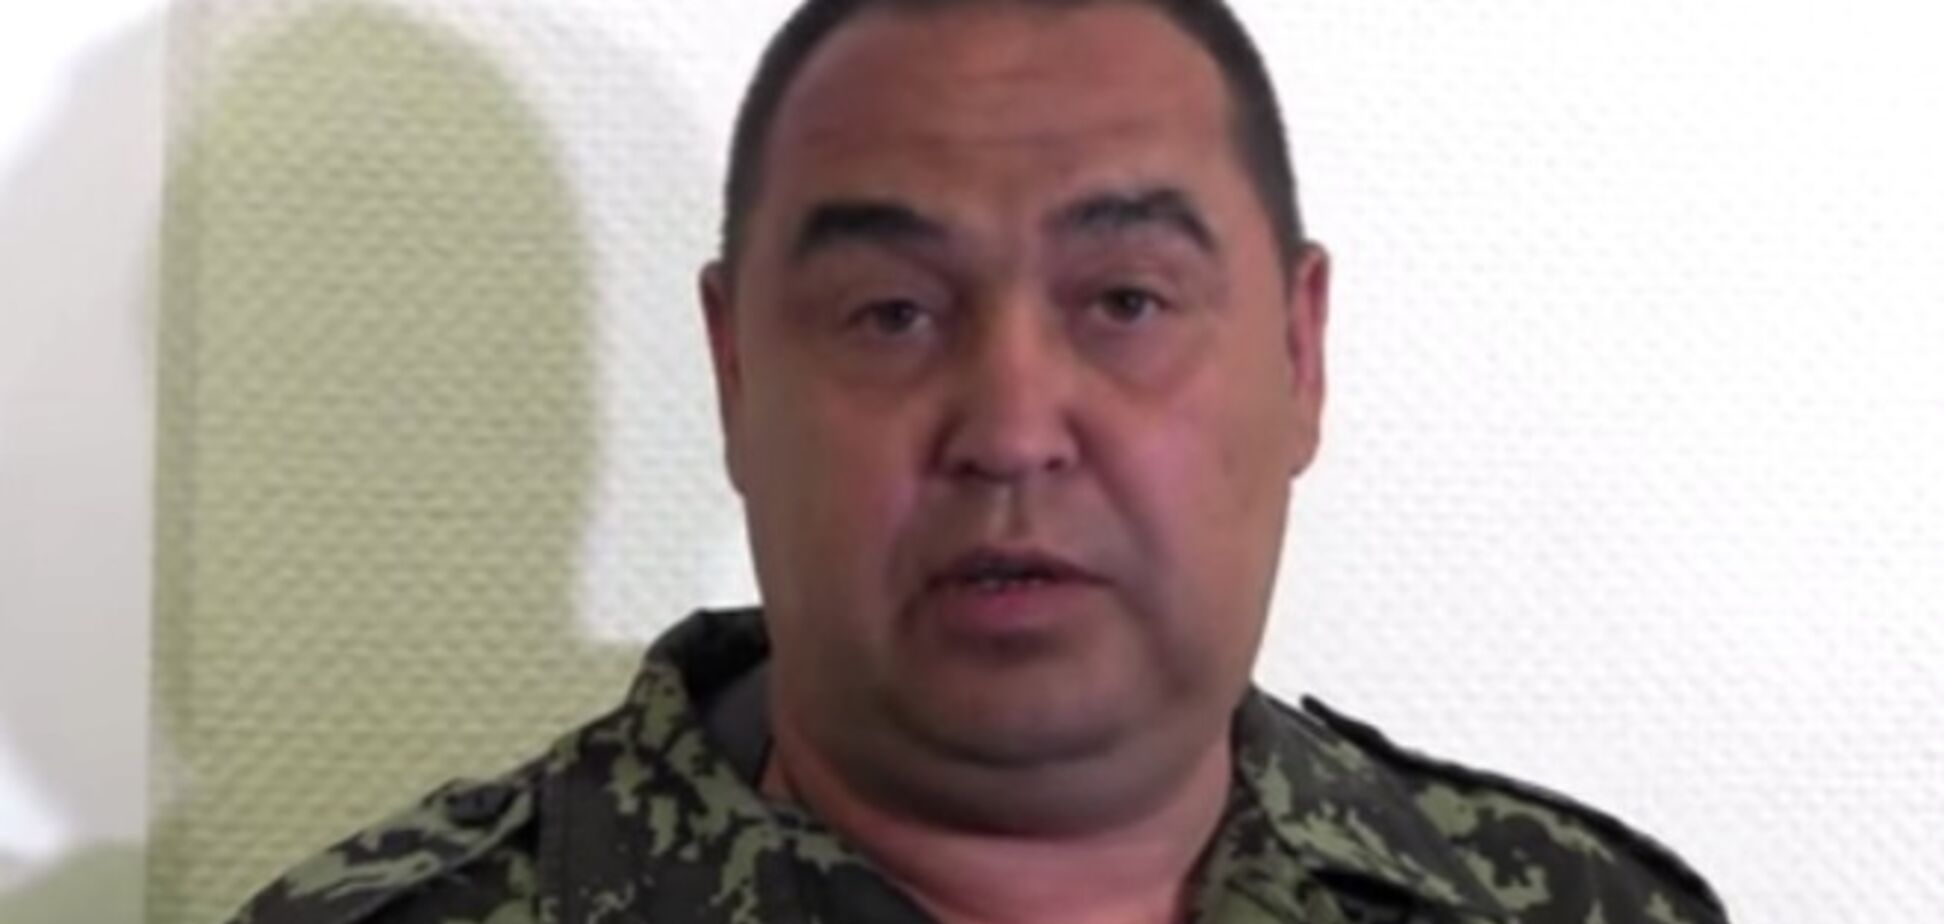 Плотницкий признался, что воюет за содержание 'ДНР' и 'ЛНР' Украиной